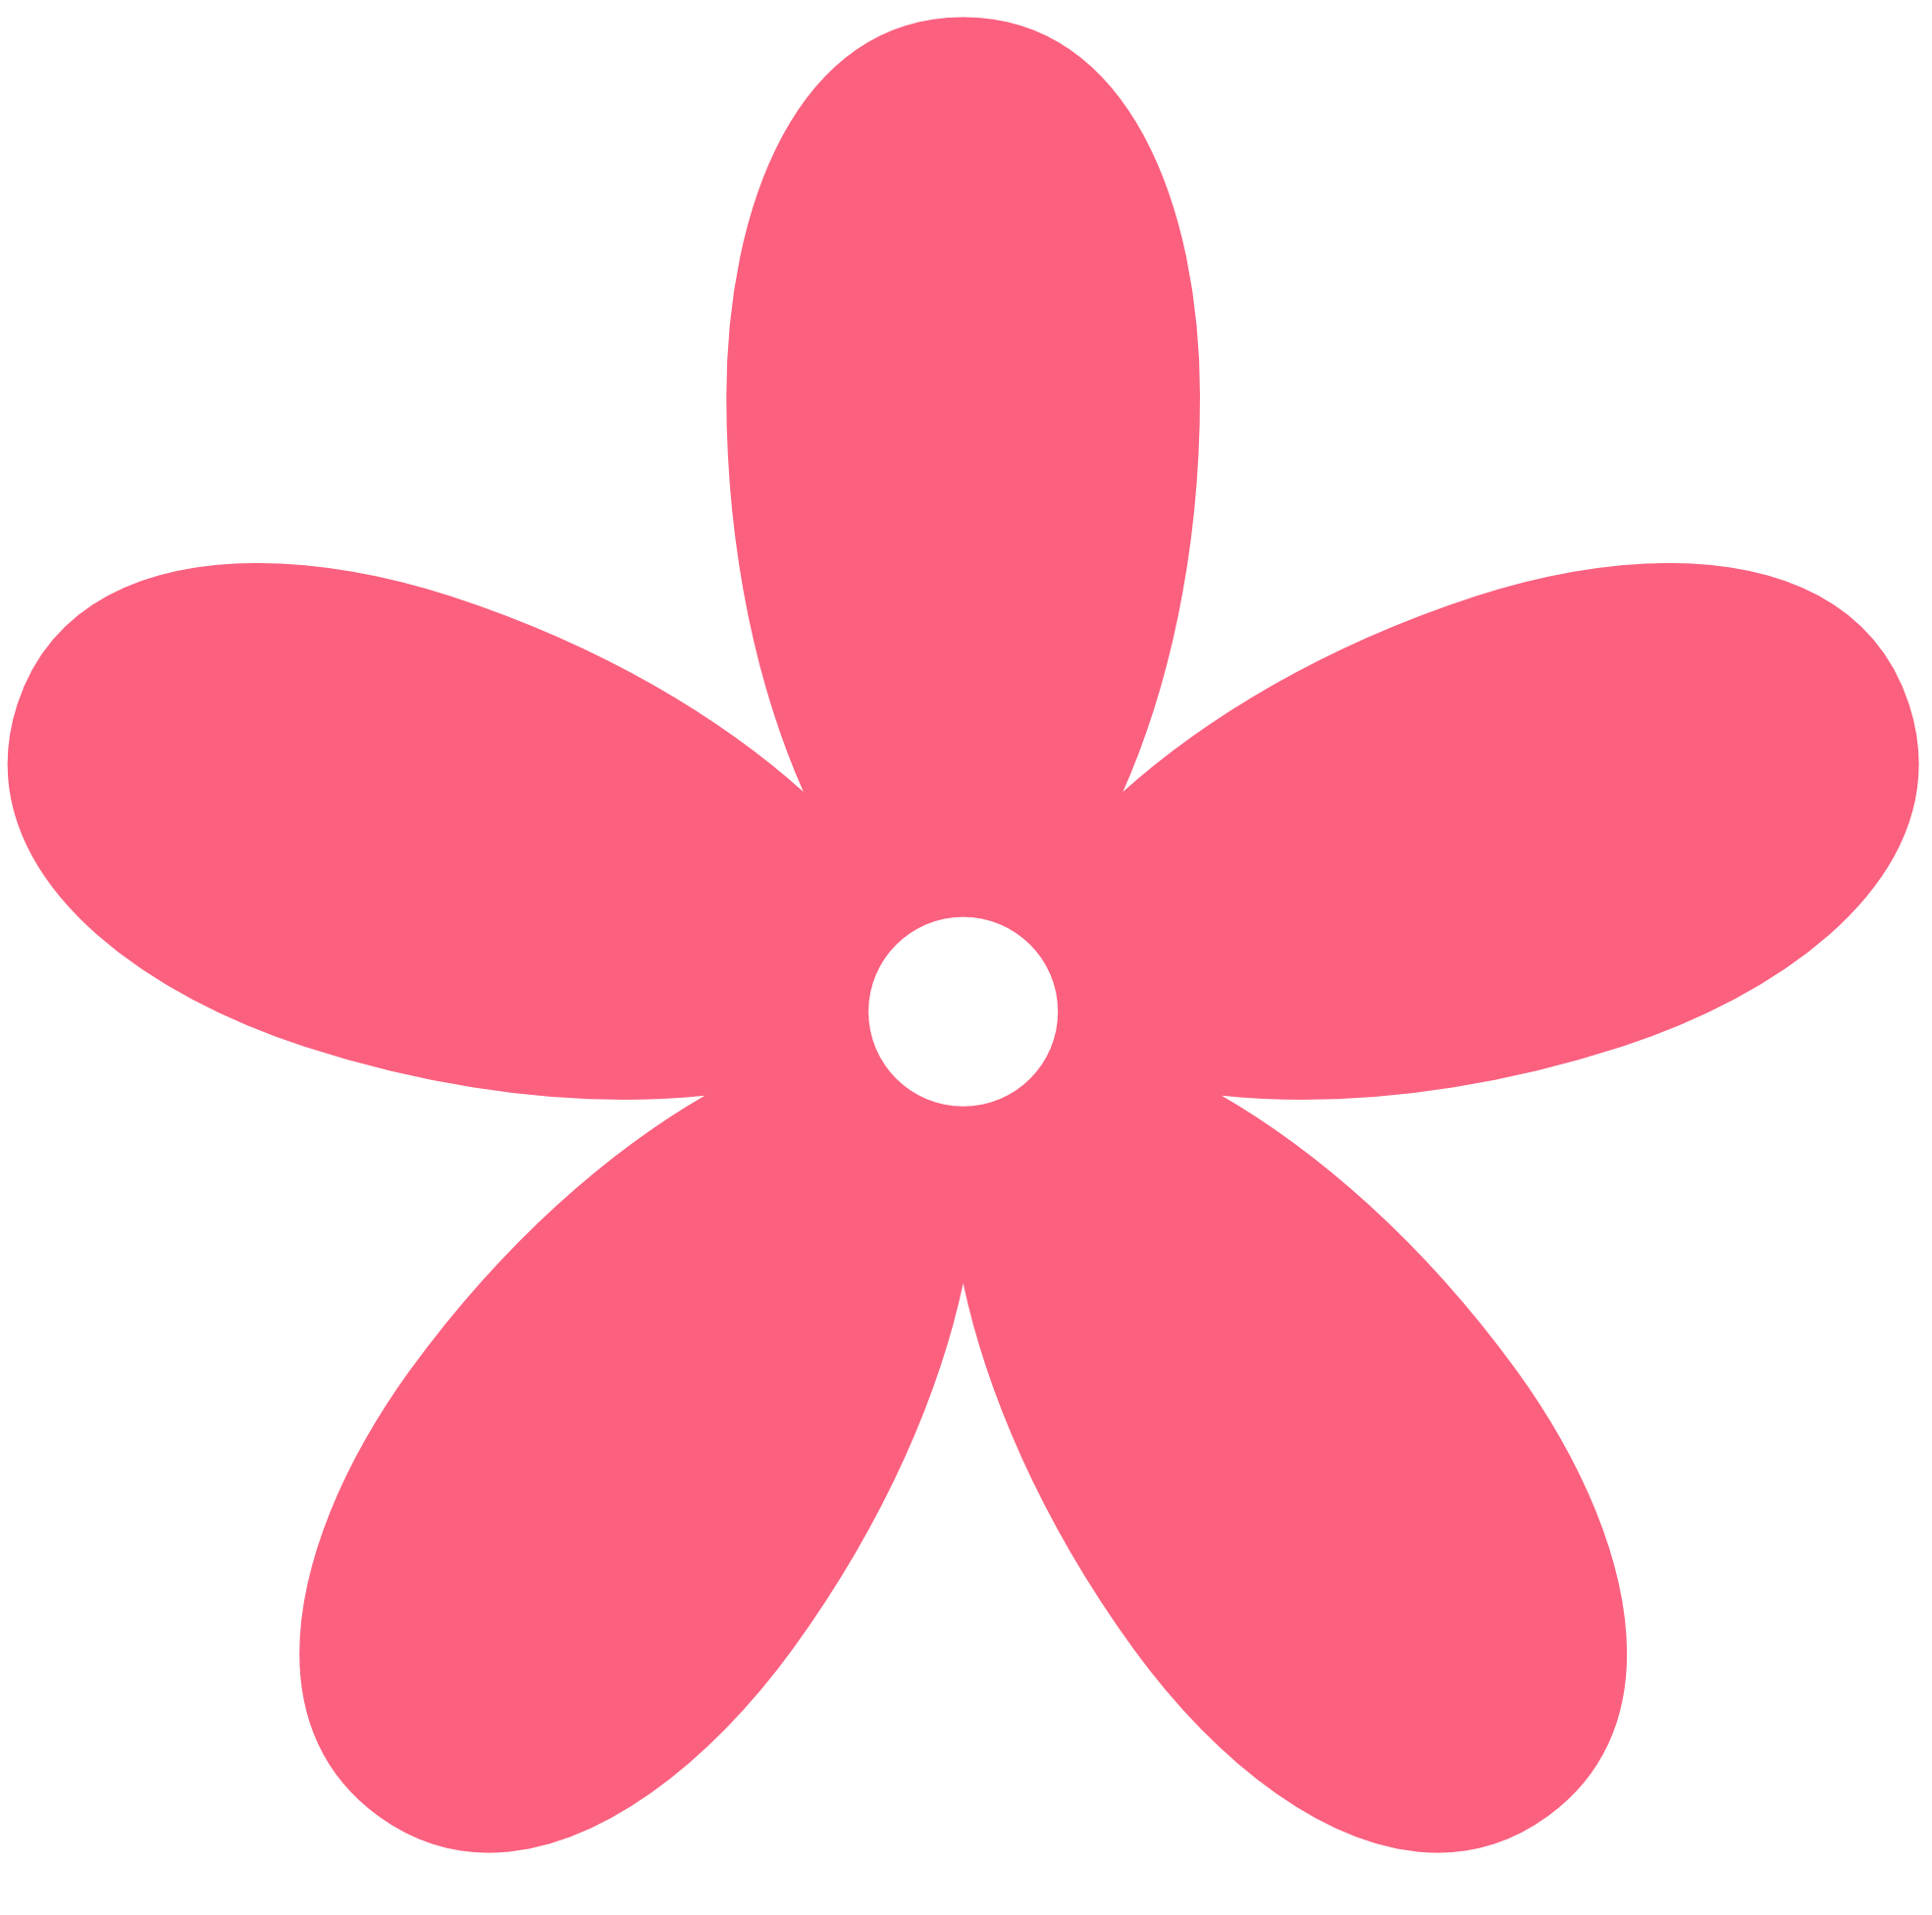 Light Pink Flowers Clip Art - ClipArt Best